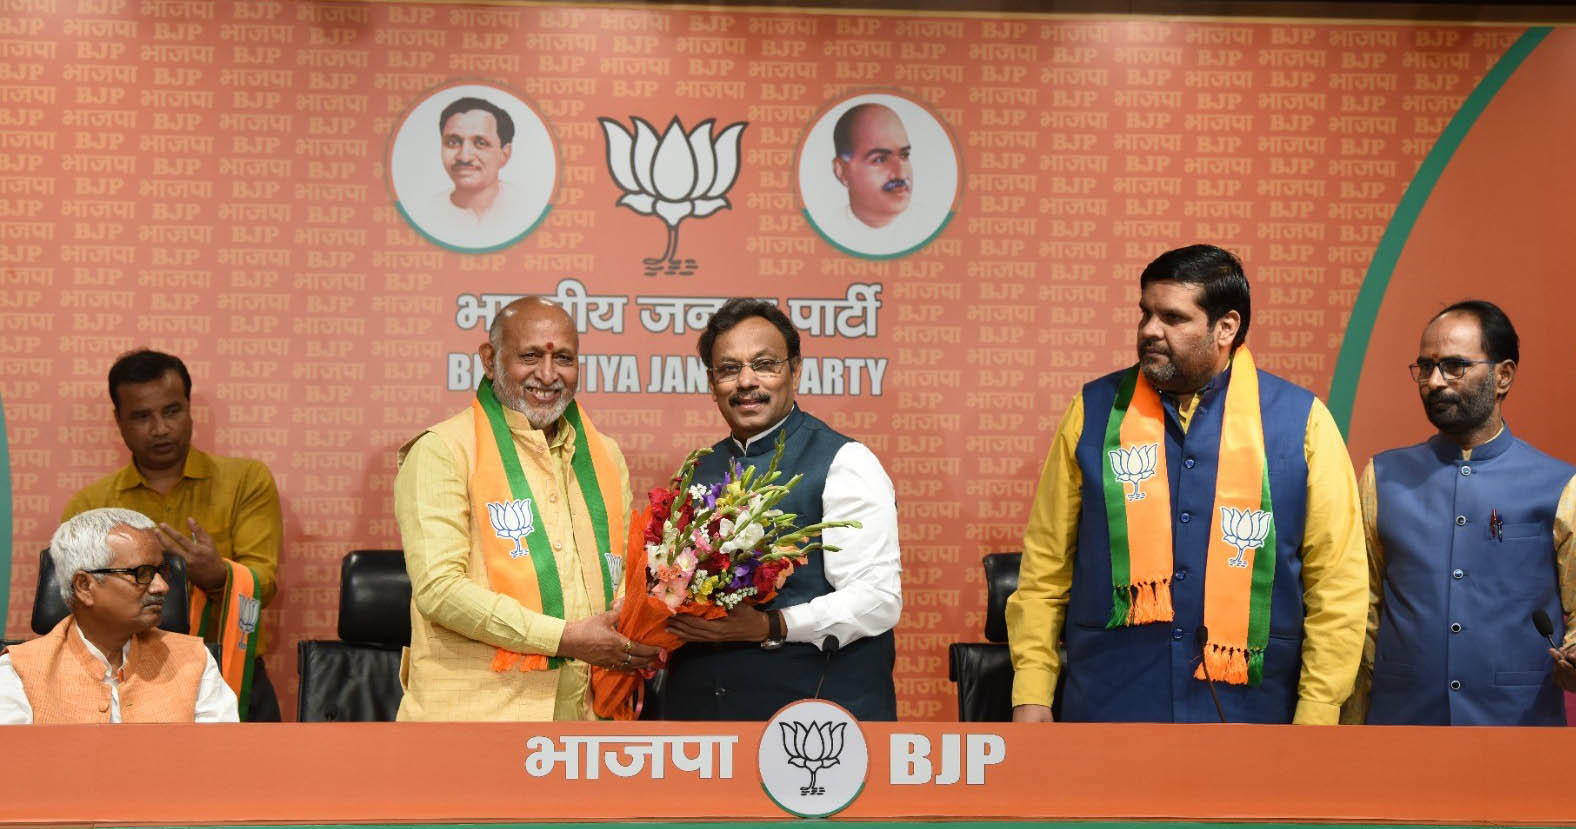 बीजेपी महासचिव विनोद तावड़े की मौजूदगी में कांग्रेस नेता गौरव वल्लभ,अनिल शर्मा और पूर्व राजद नेता उपेंद्र प्रसाद बीजेपी में शामिल हो गए।